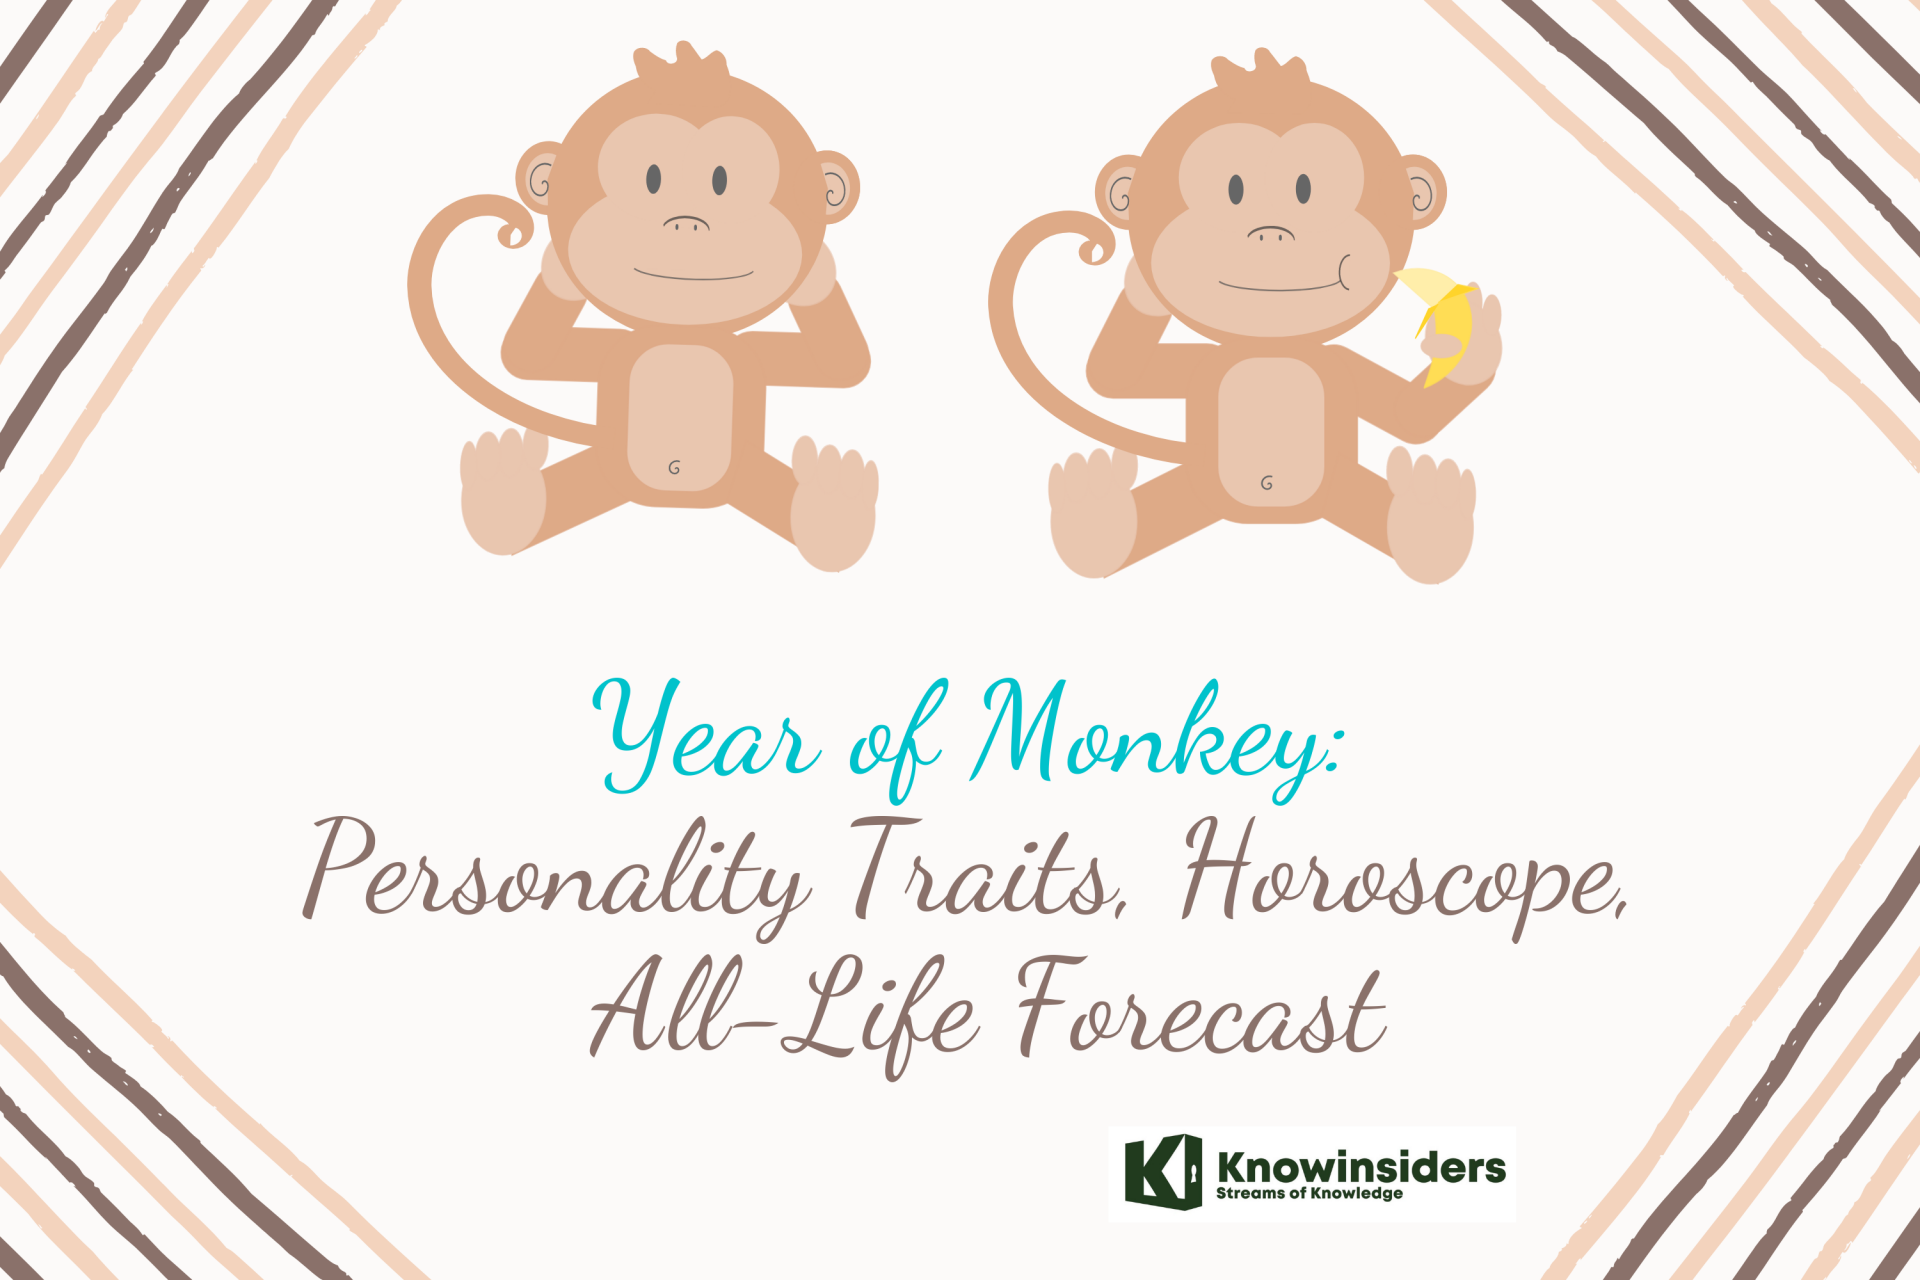 Year of Monkey: Personality Traits, Horoscope, Forecast - Chinese Zodiac